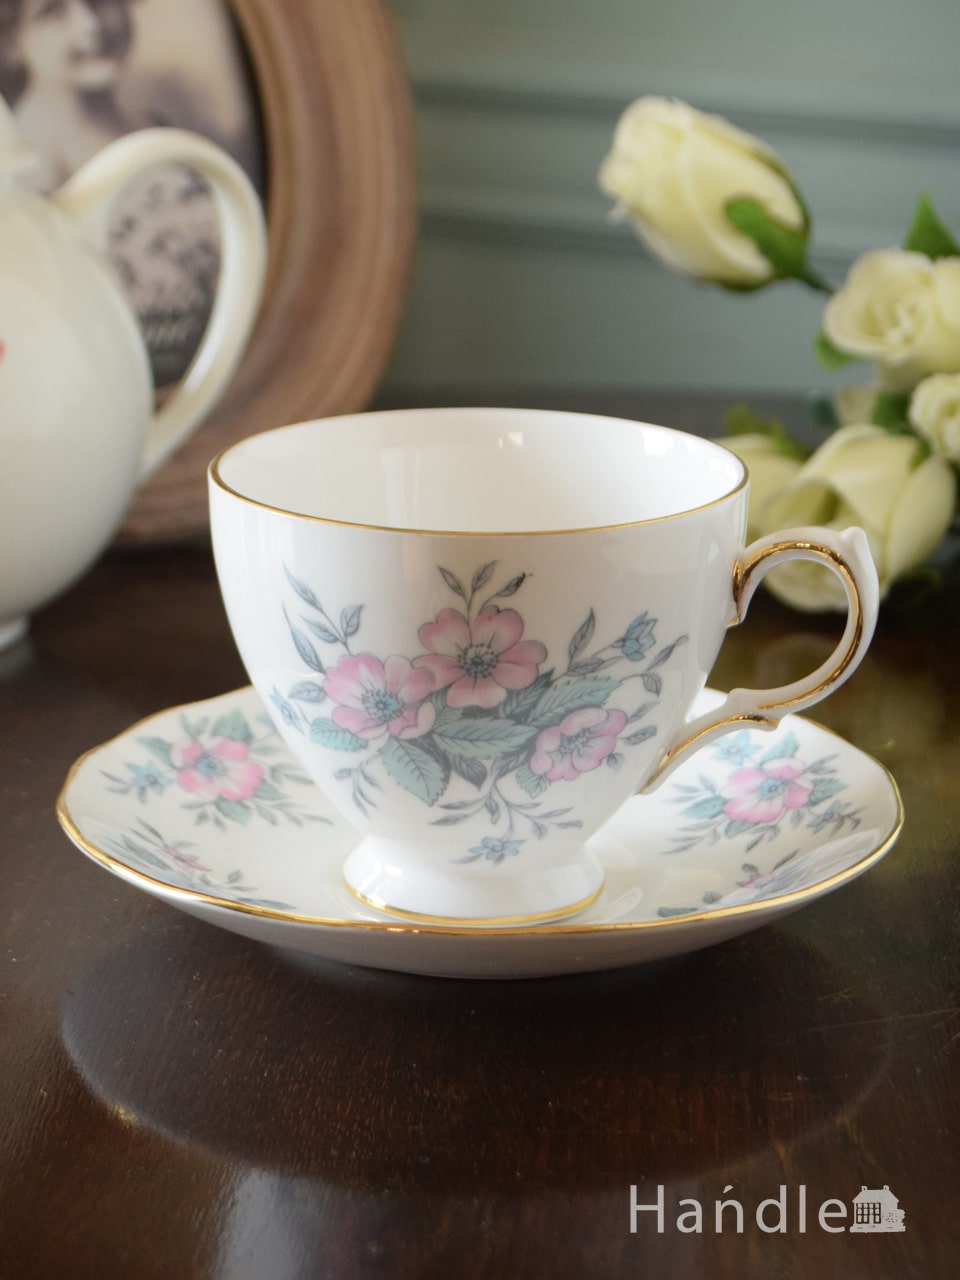 コルクラフ(Colclough)のカップ＆ソーサー、淡い色のお花がステキなアンティークの食器 (m-4607-z)